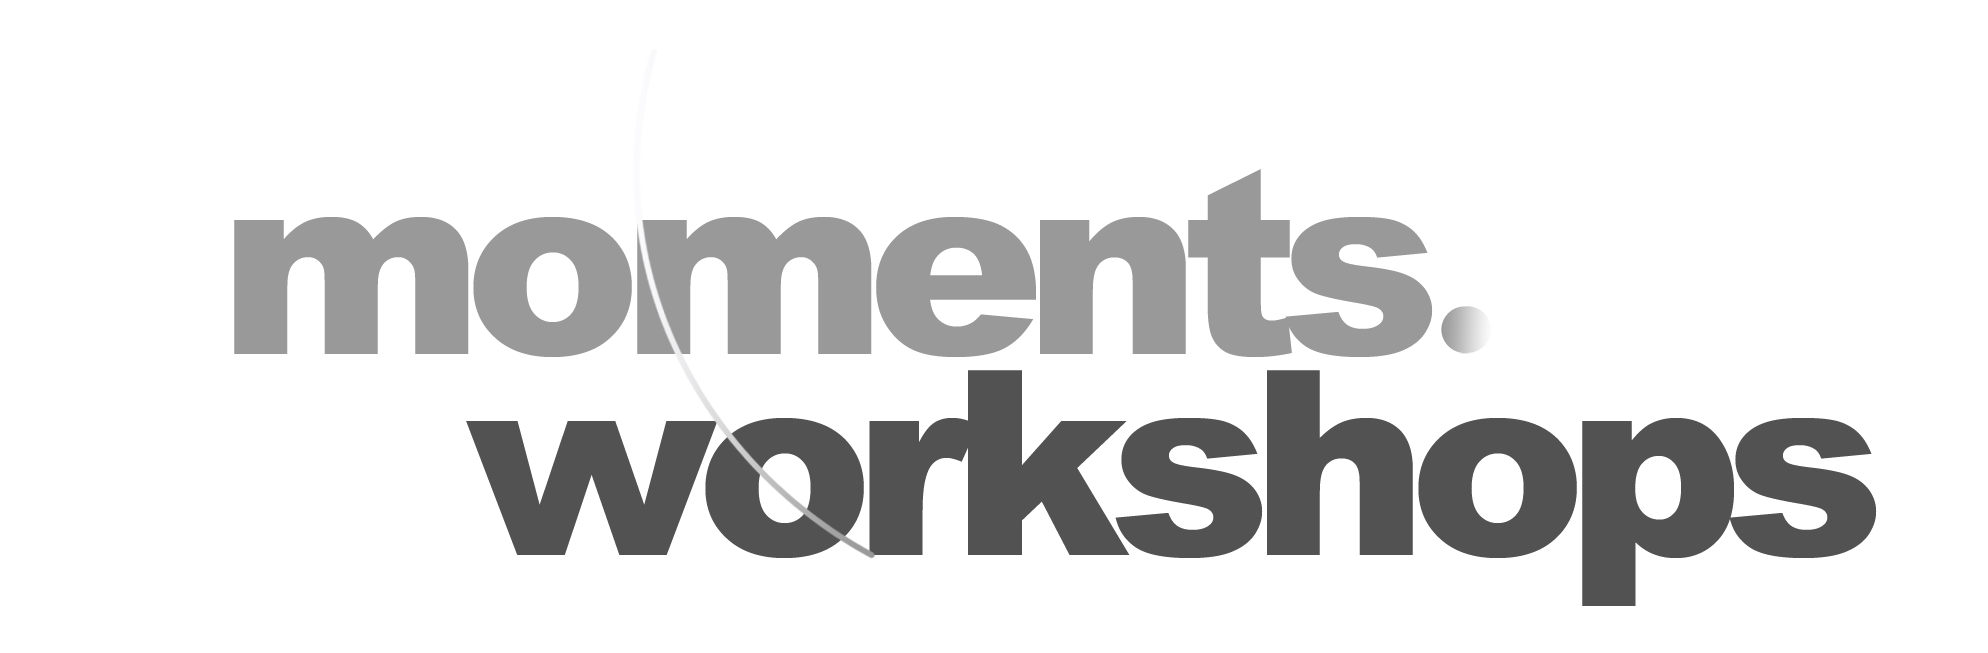 Moments Workshops